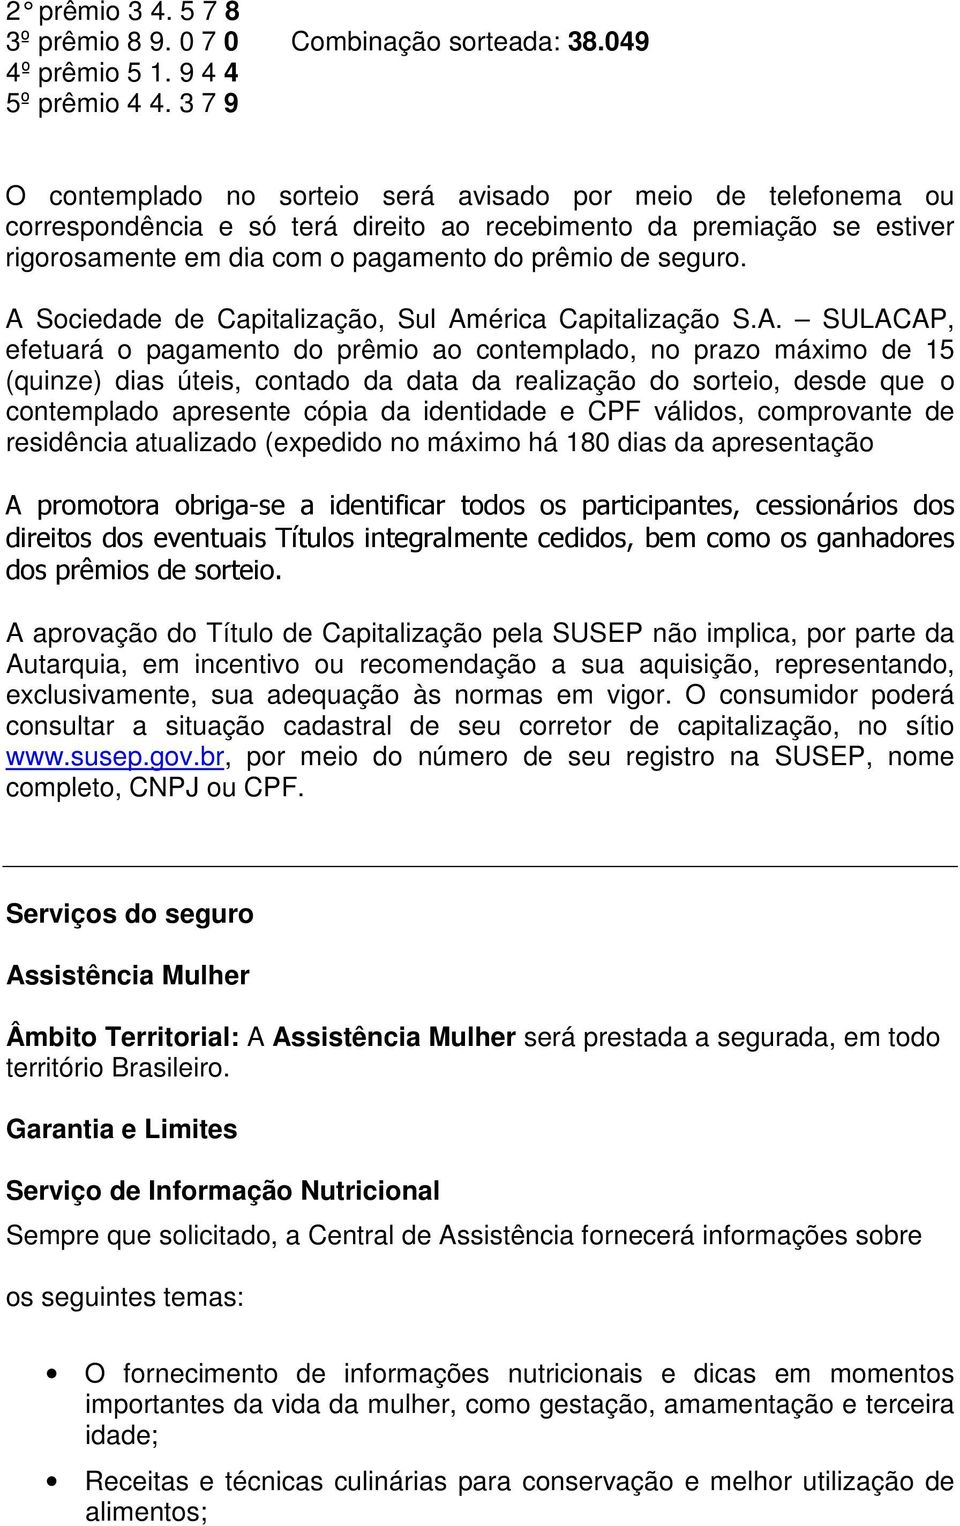 A Sociedade de Capitalização, Sul América Capitalização S.A. SULACAP, efetuará o pagamento do prêmio ao contemplado, no prazo máximo de 15 (quinze) dias úteis, contado da data da realização do